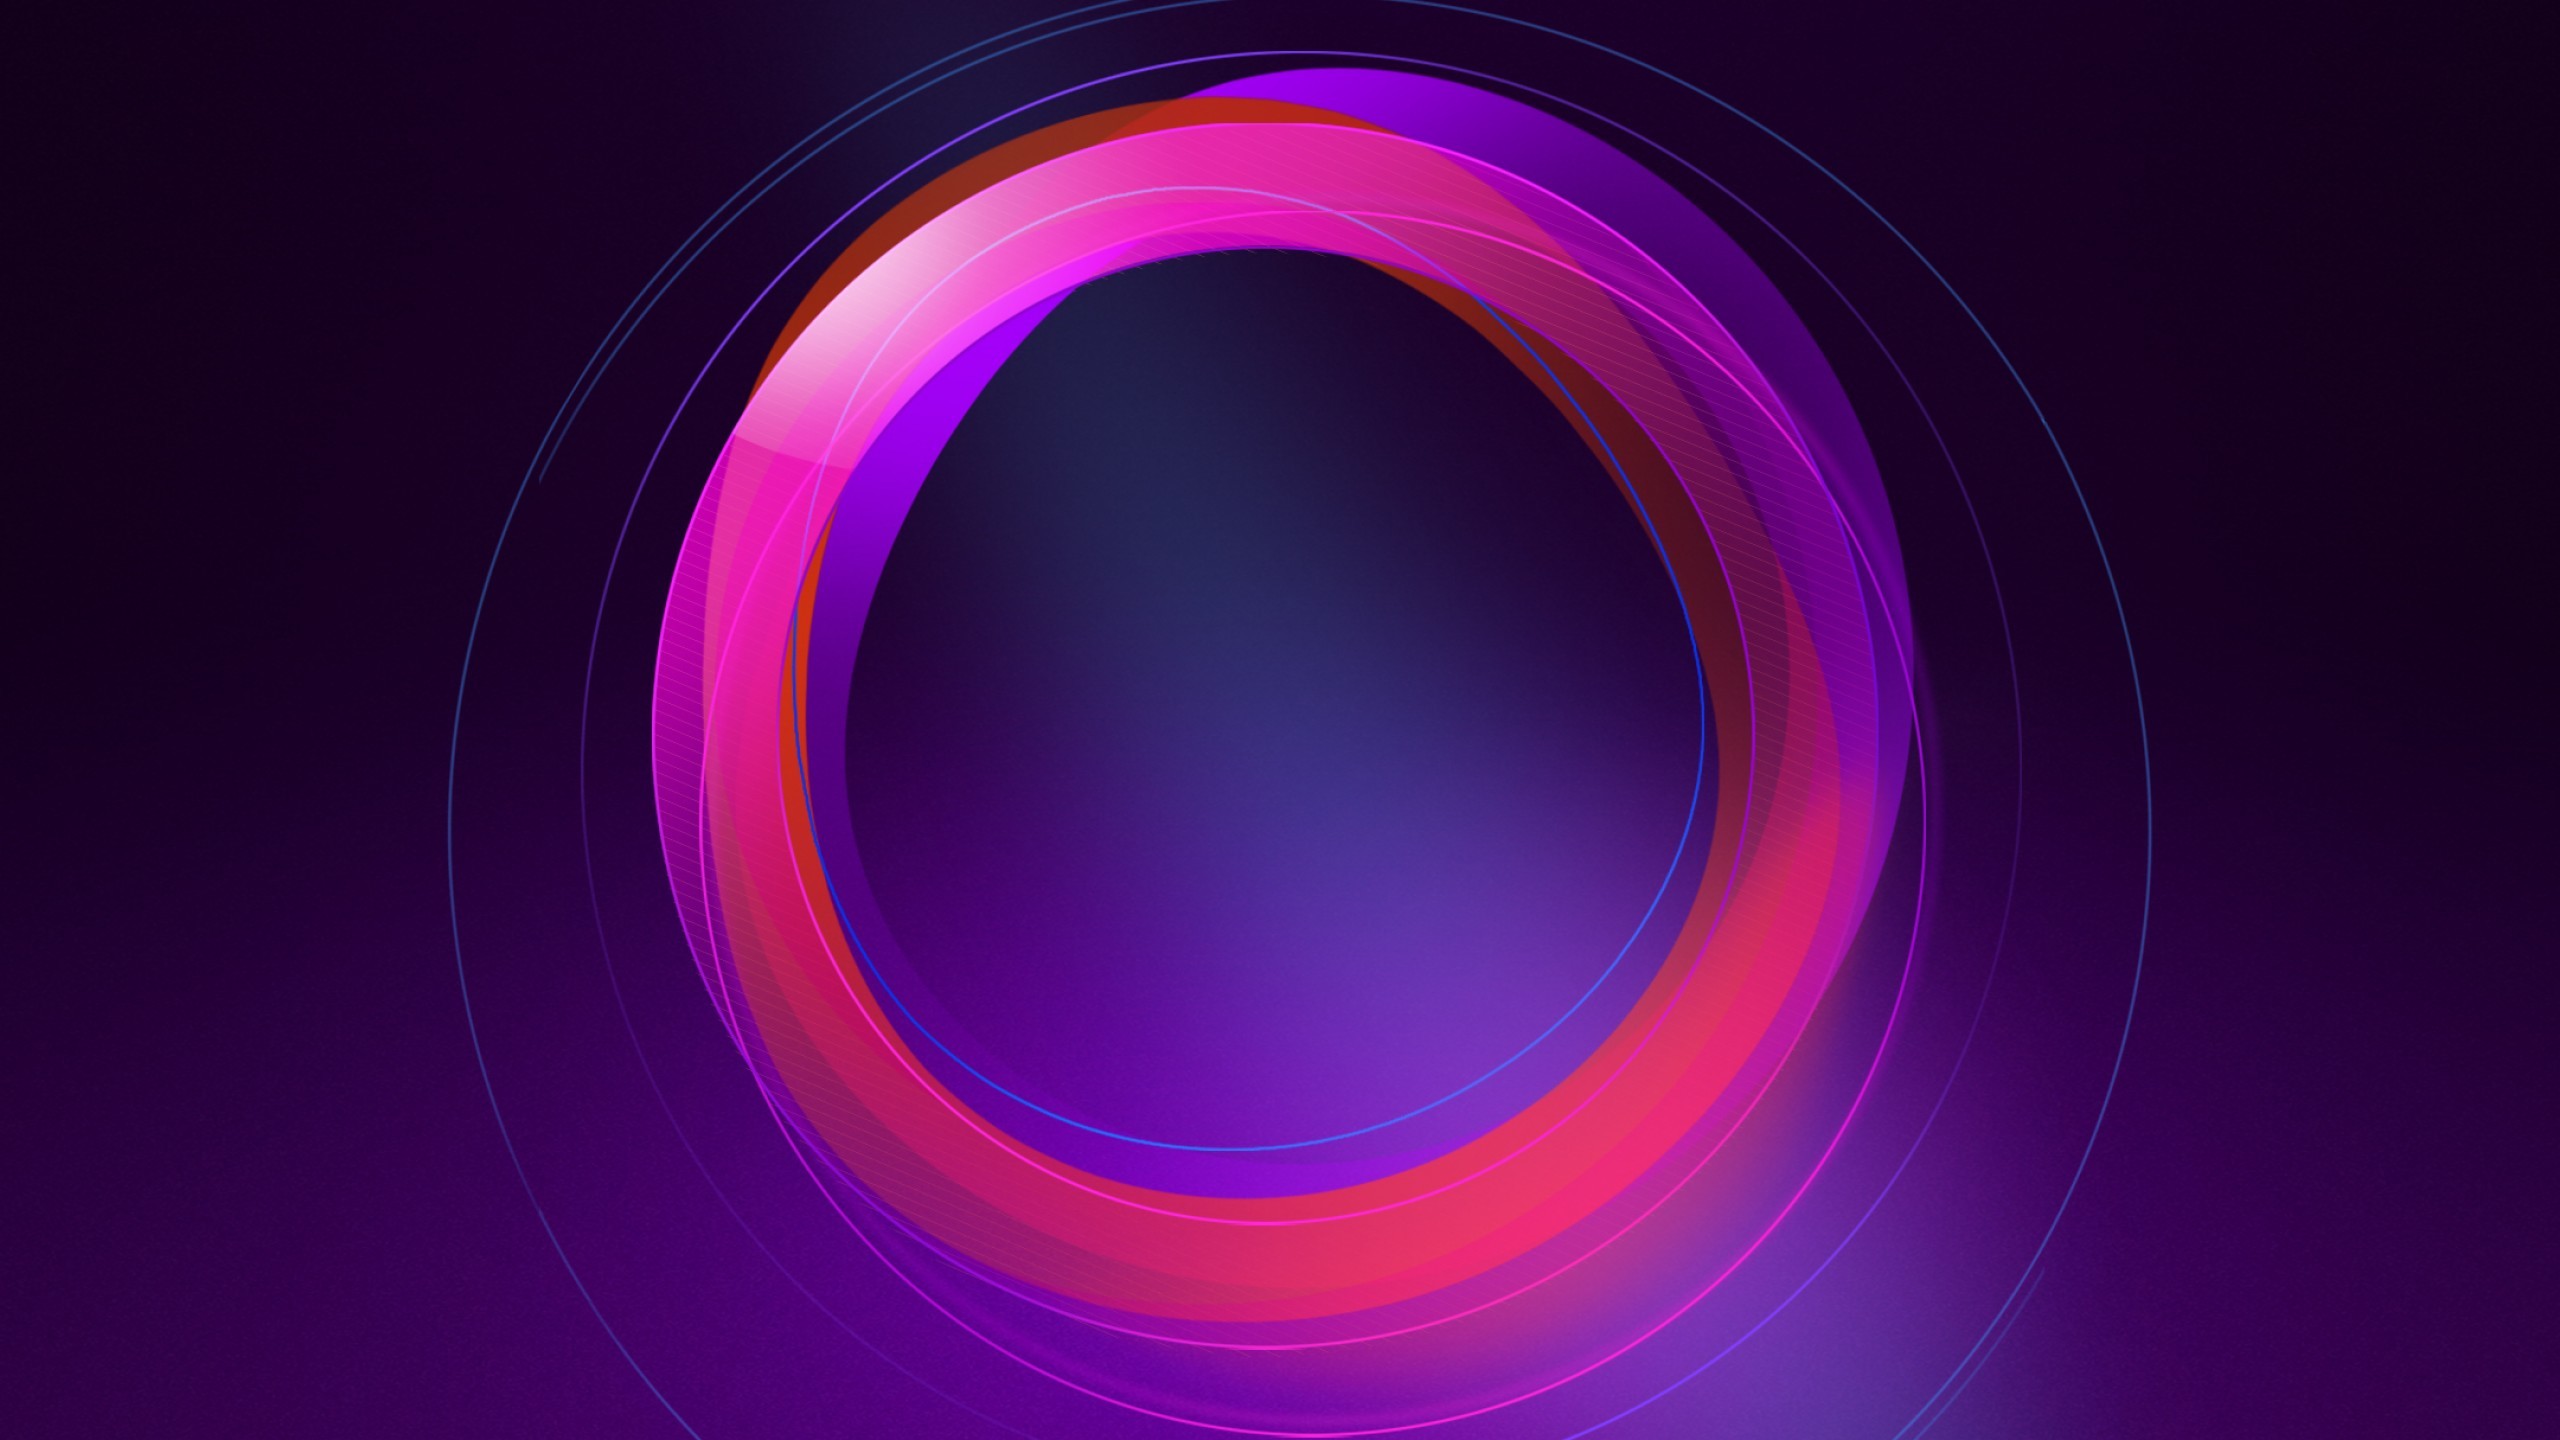 2560x1440 Abstract / Circles Wallpaper. Circles, Pink, Purple, HD